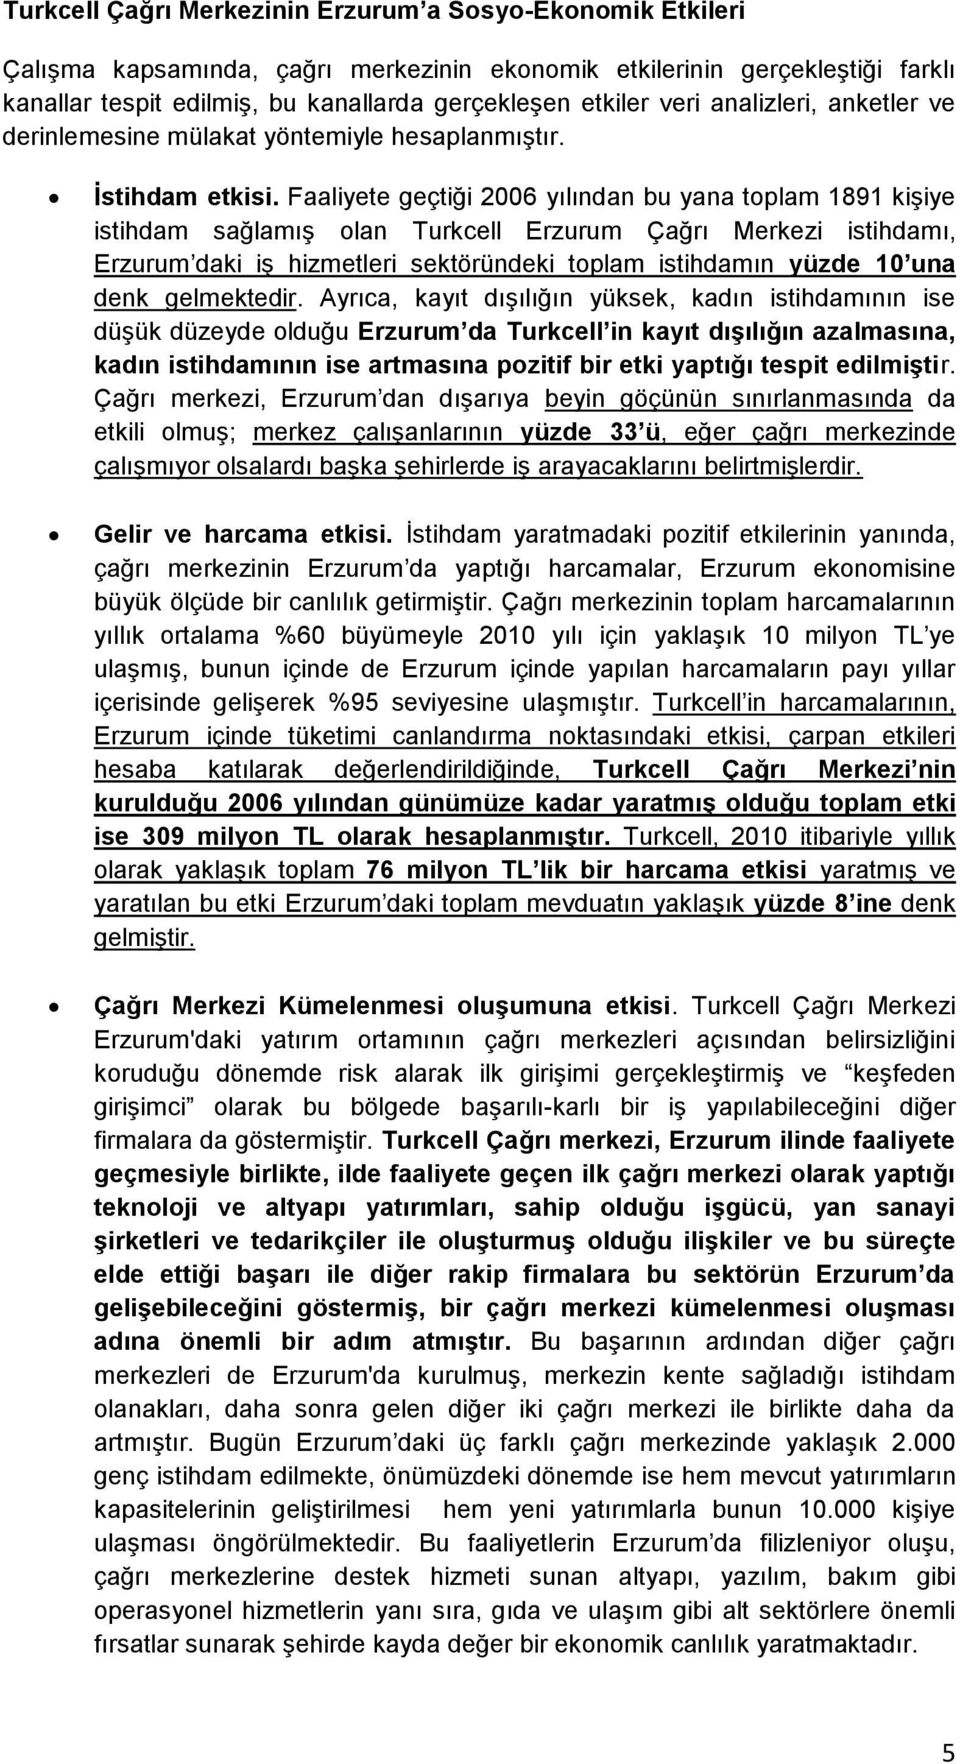 Faaliyete geçtiği 2006 yılından bu yana toplam 1891 kişiye istihdam sağlamış olan Turkcell Erzurum Çağrı Merkezi istihdamı, Erzurum daki iş hizmetleri sektöründeki toplam istihdamın yüzde 10 una denk